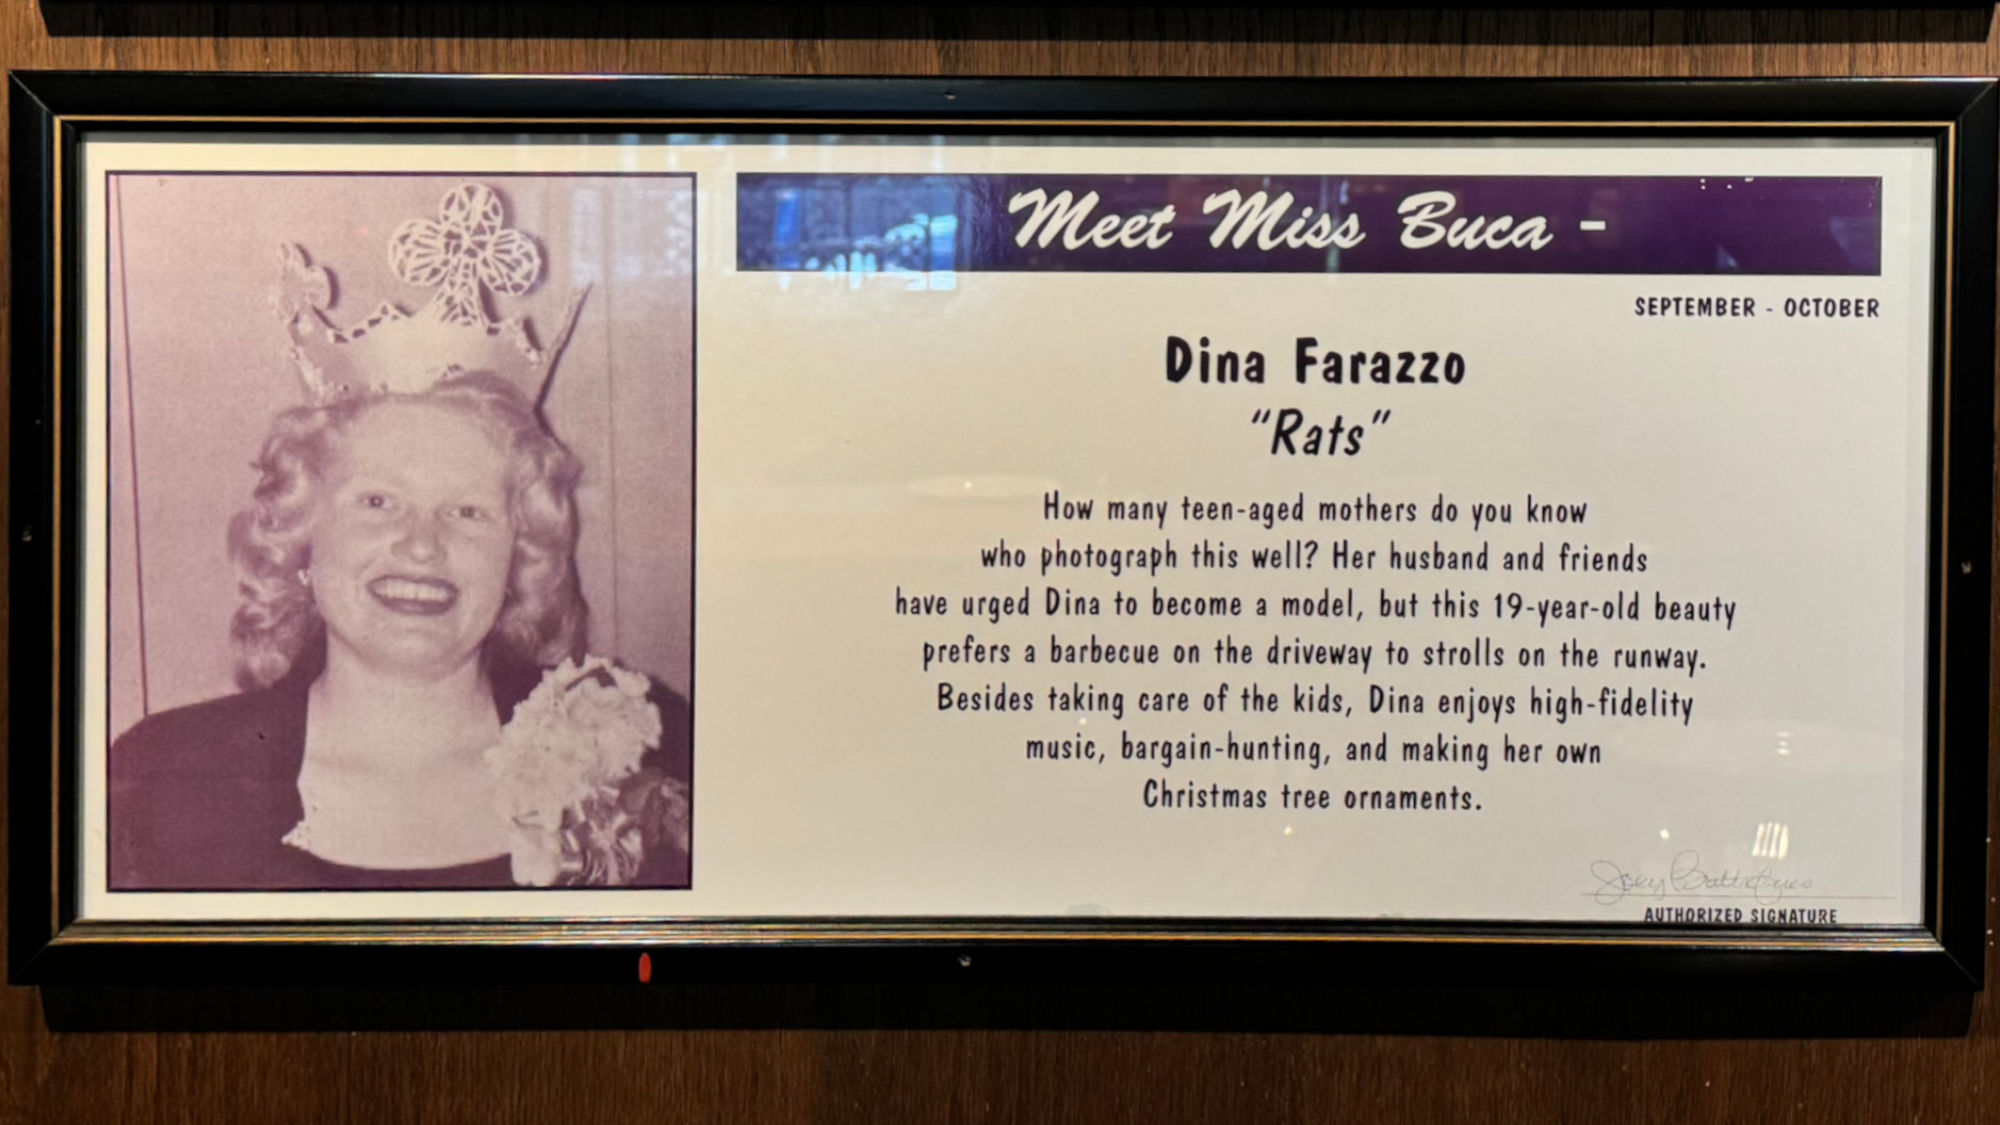 Meet Miss Buca Dina Farazzo